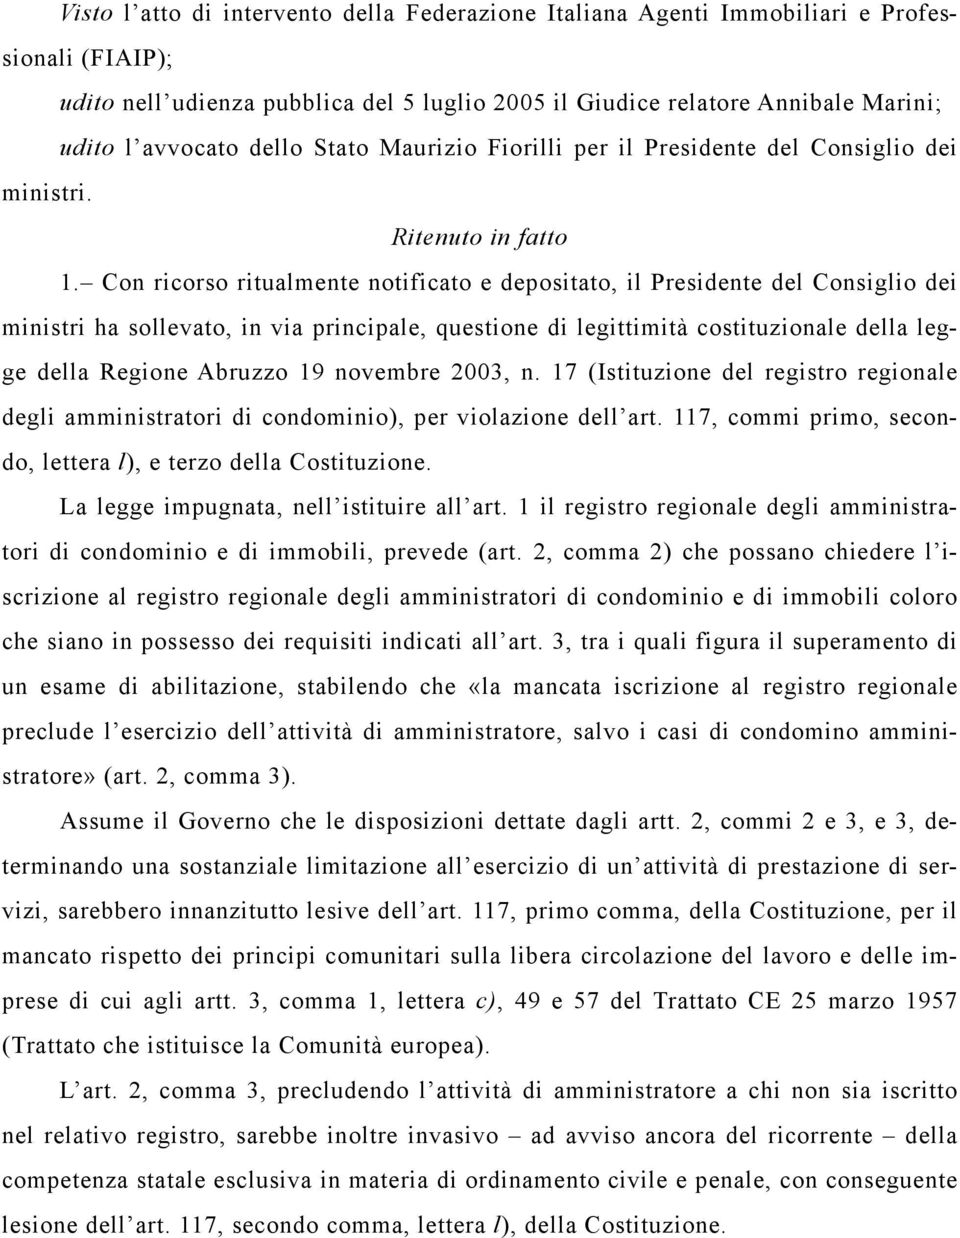 Con ricorso ritualmente notificato e depositato, il Presidente del Consiglio dei ministri ha sollevato, in via principale, questione di legittimità costituzionale della legge della Regione Abruzzo 19